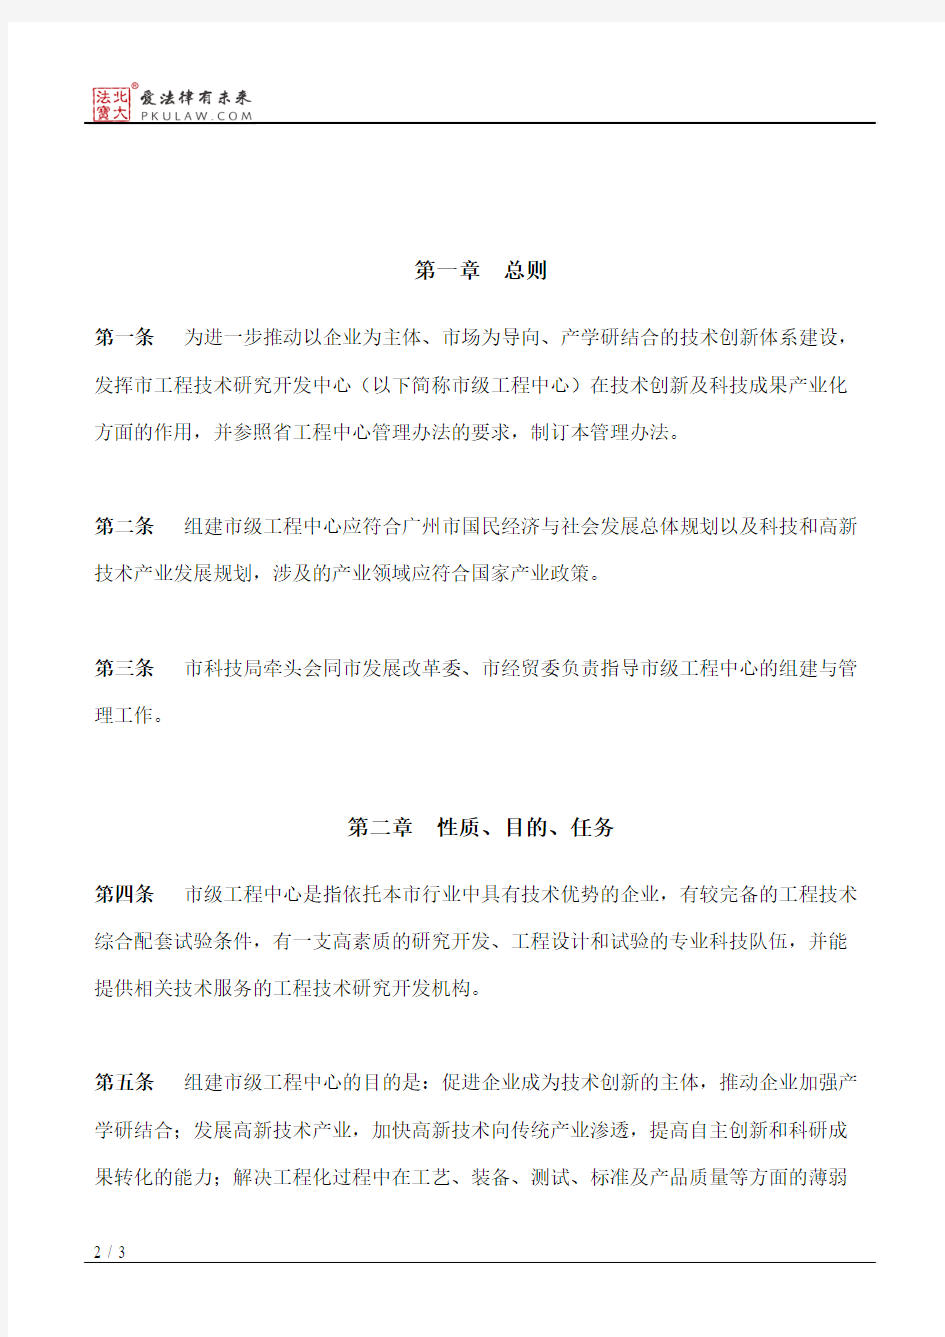 广州市科学技术局关于印发广州市工程技术研究开发中心管理办法的通知